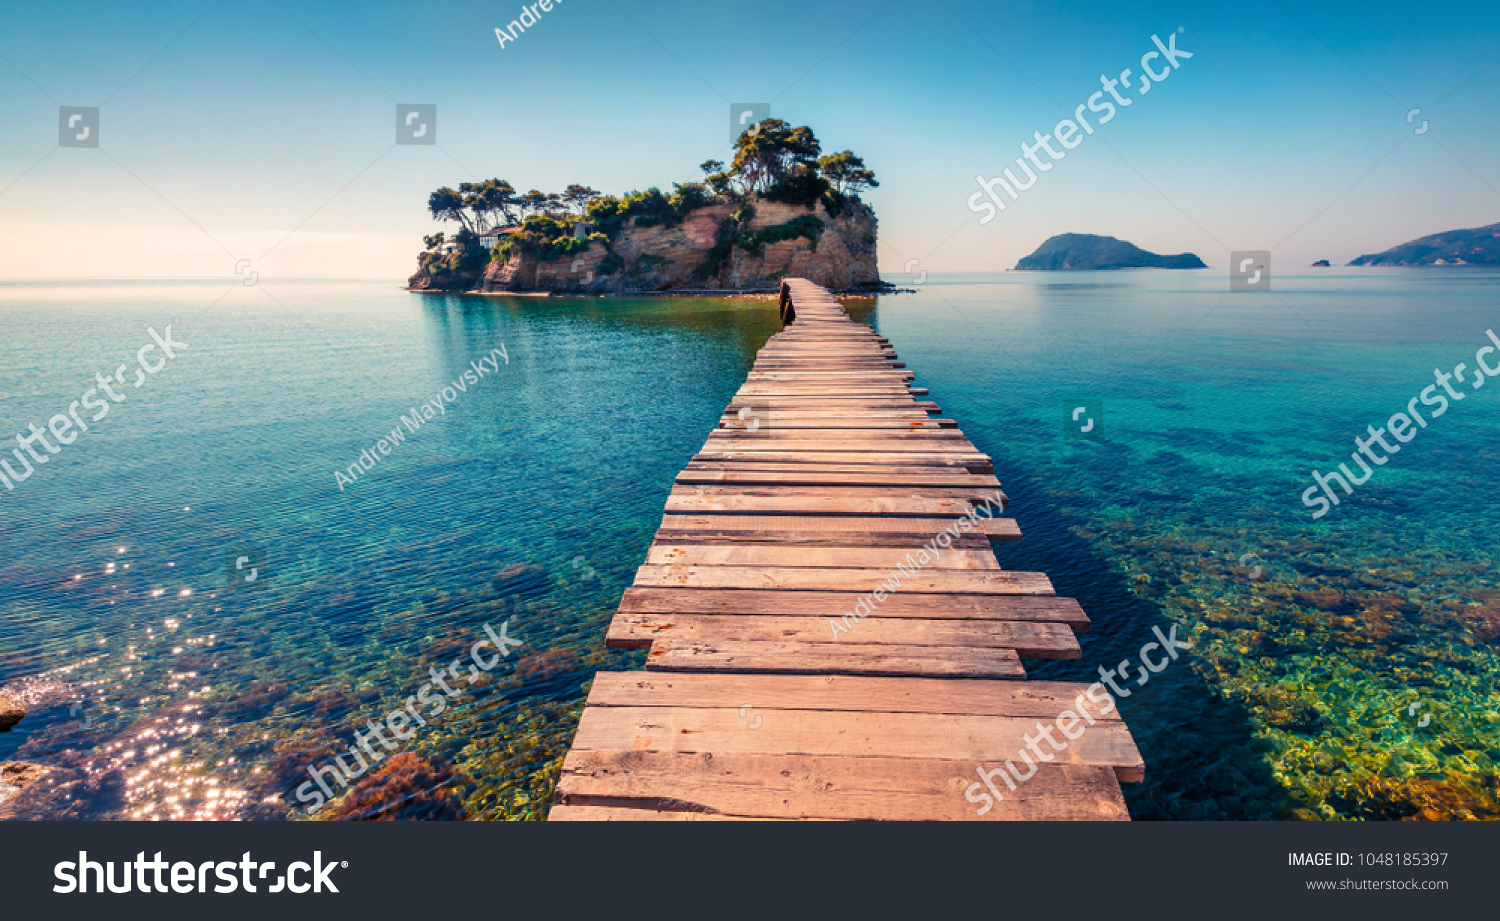 Jasny wiosenny widok na wyspę Cameo. Malownicza poranna scena na Port Sostis, wyspy Zakinthos, Grecja, Europa. Piękno natury koncepcji tła. #1048185397